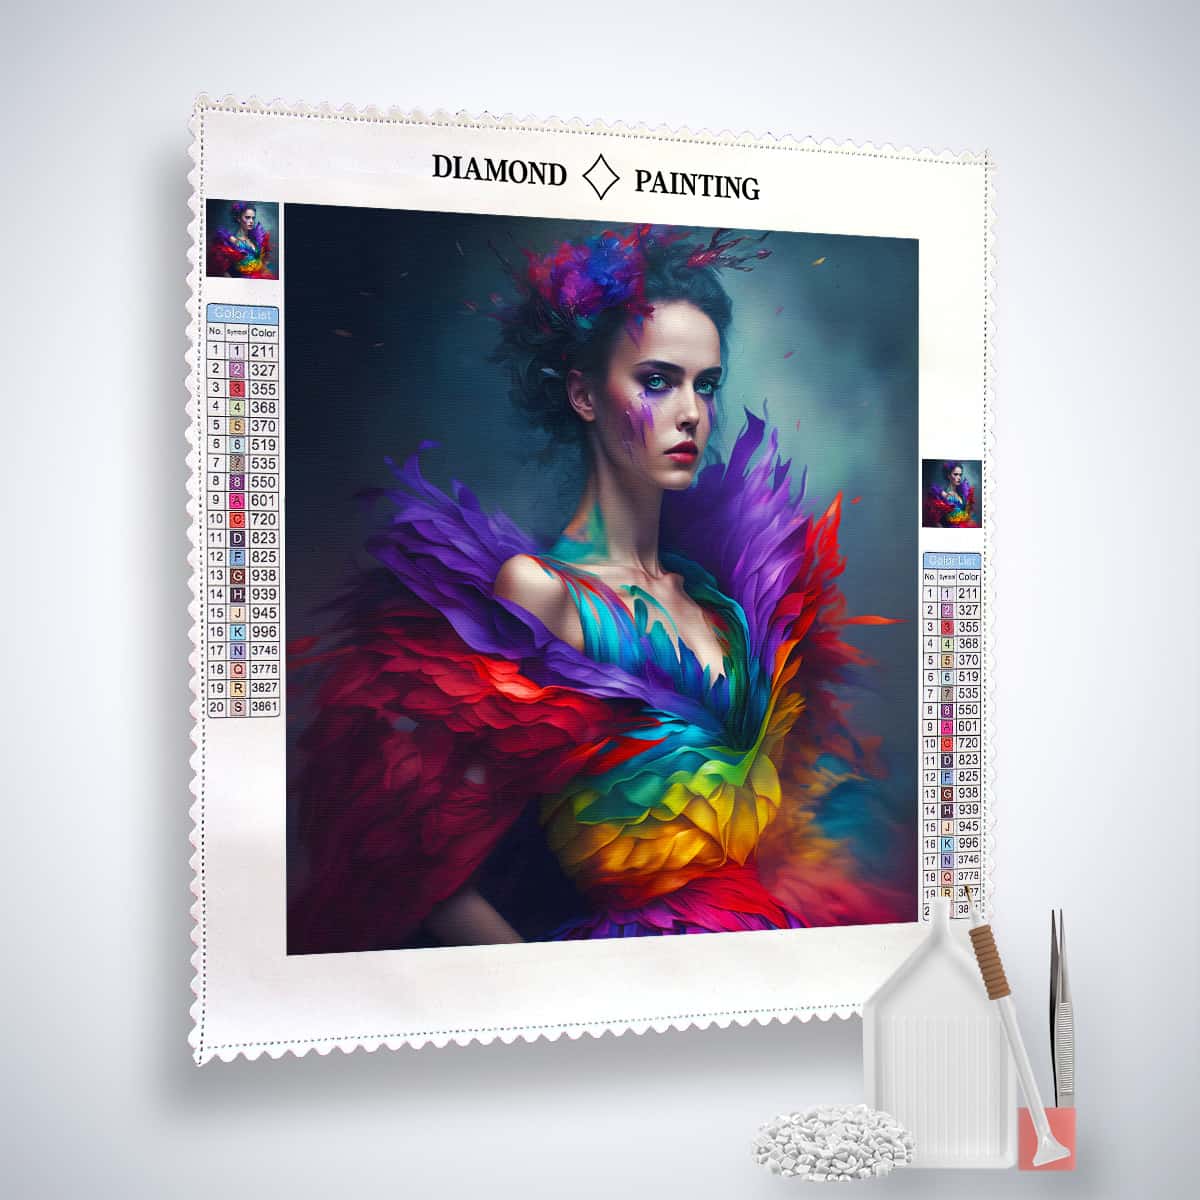 AB Diamond Painting - Frau mit Regenbogenkleid am Abend - gedruckt in Ultra-HD - AB Diamond, Menschen, Neu eingetroffen, Quadratisch